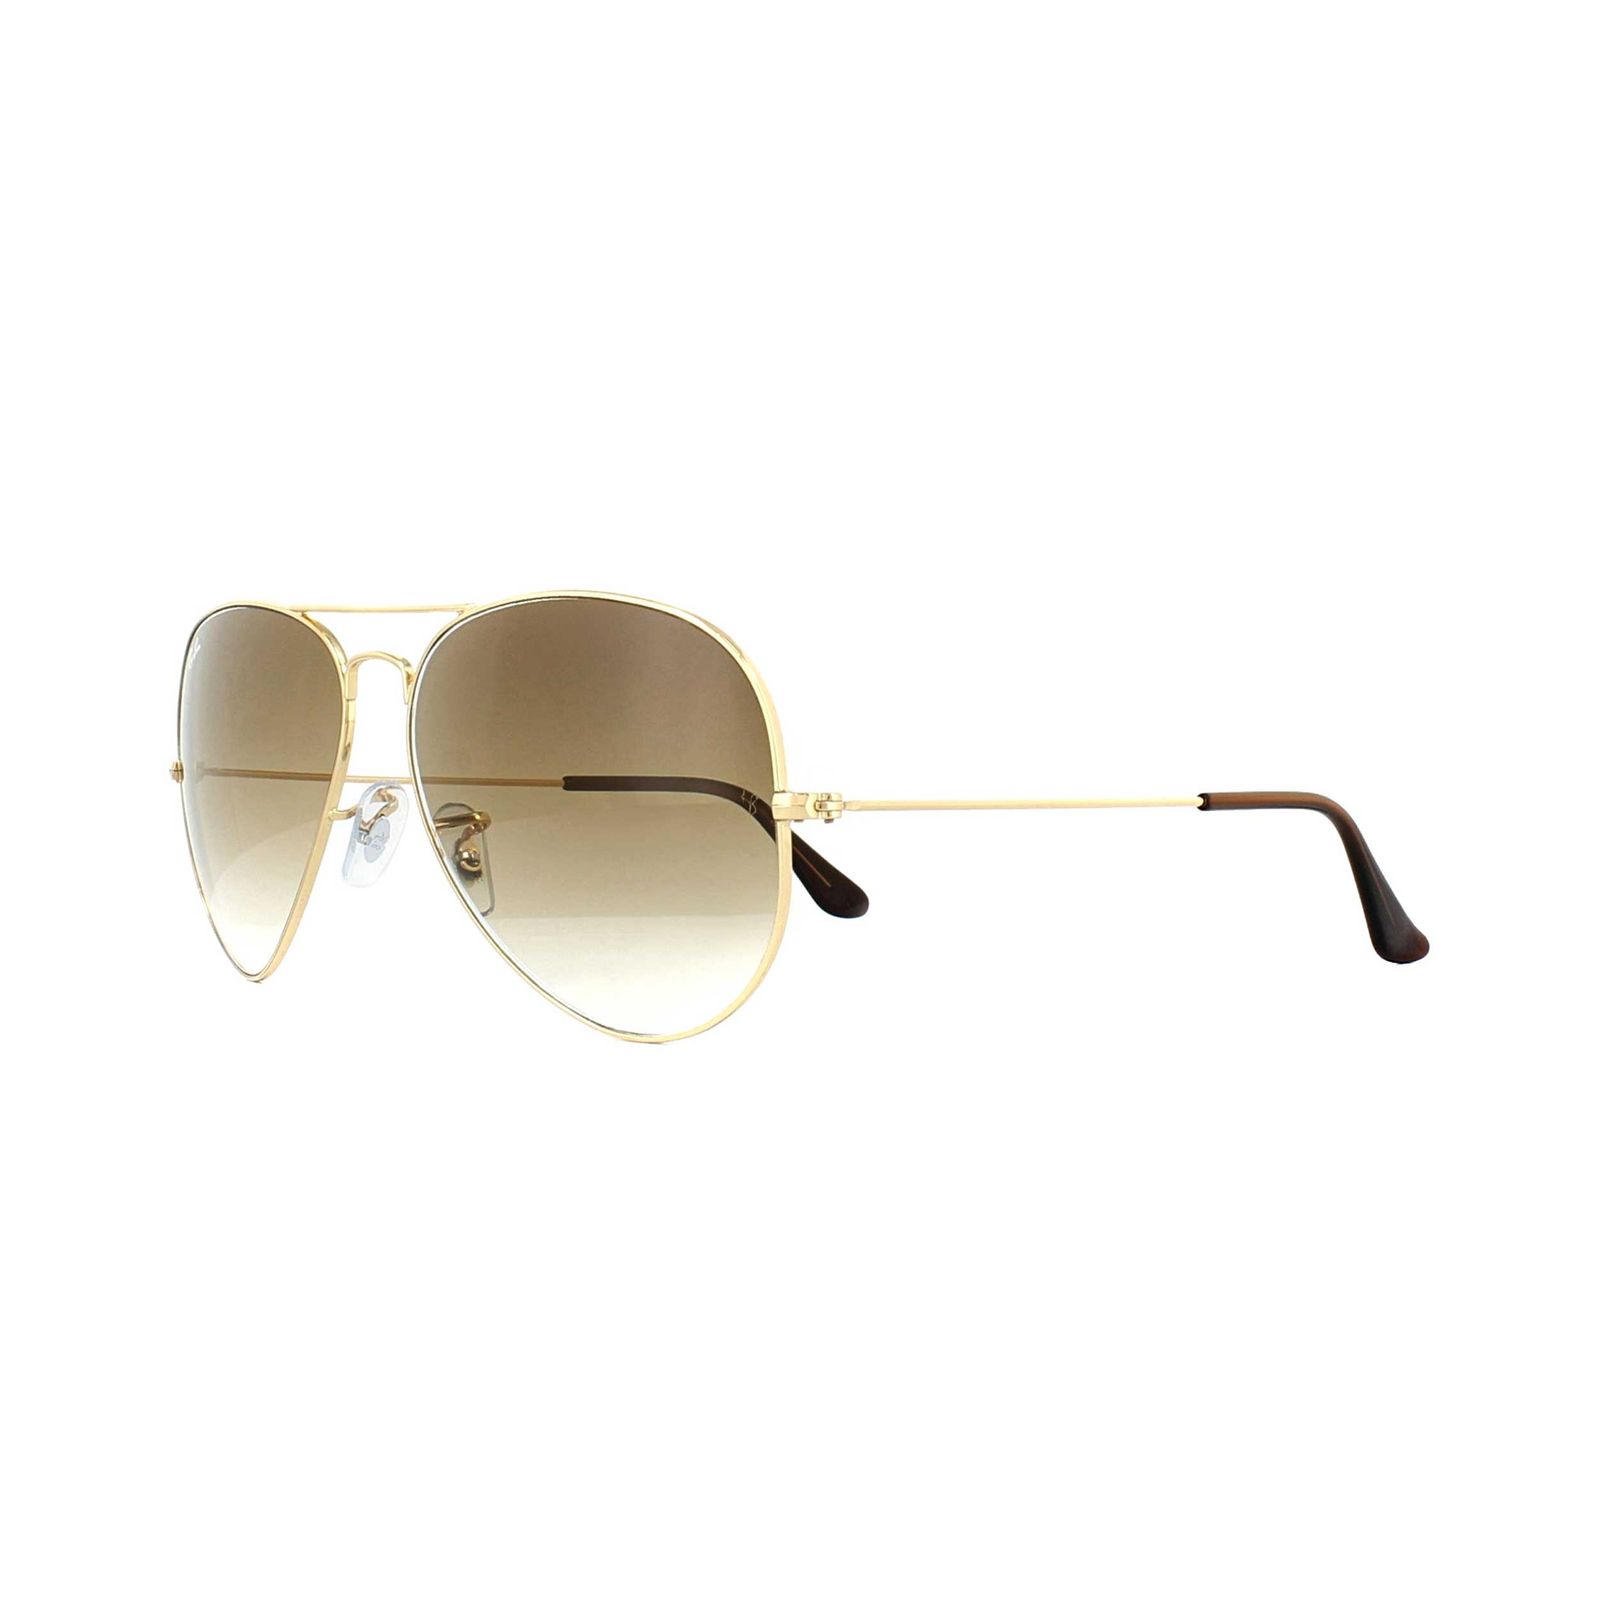 عینک آفتابی ری بن مدل 3025-001/51-62 -  - 3